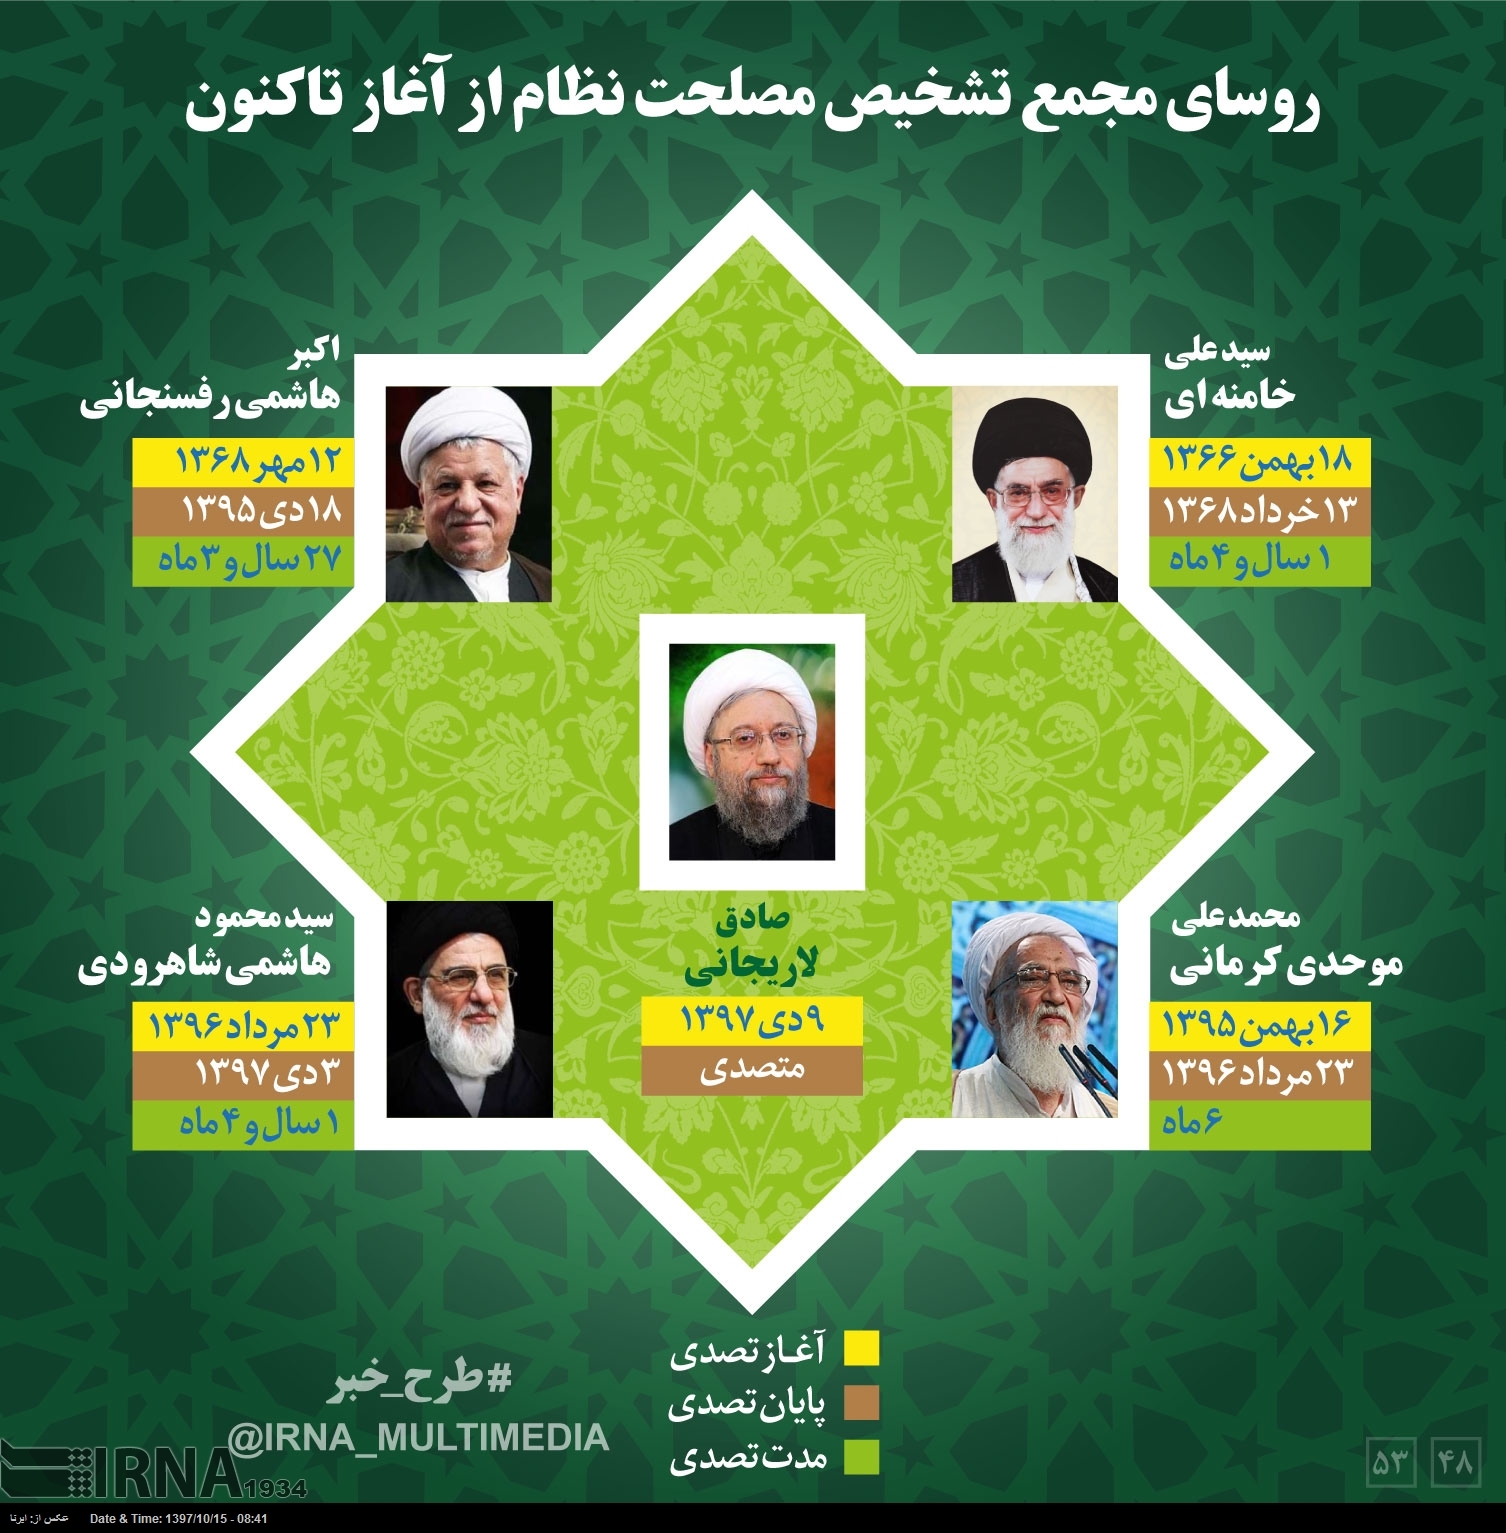 اینفوگرافیک/ روسای مجمع تشخیص مصلحت نظام از آغاز تا کنون